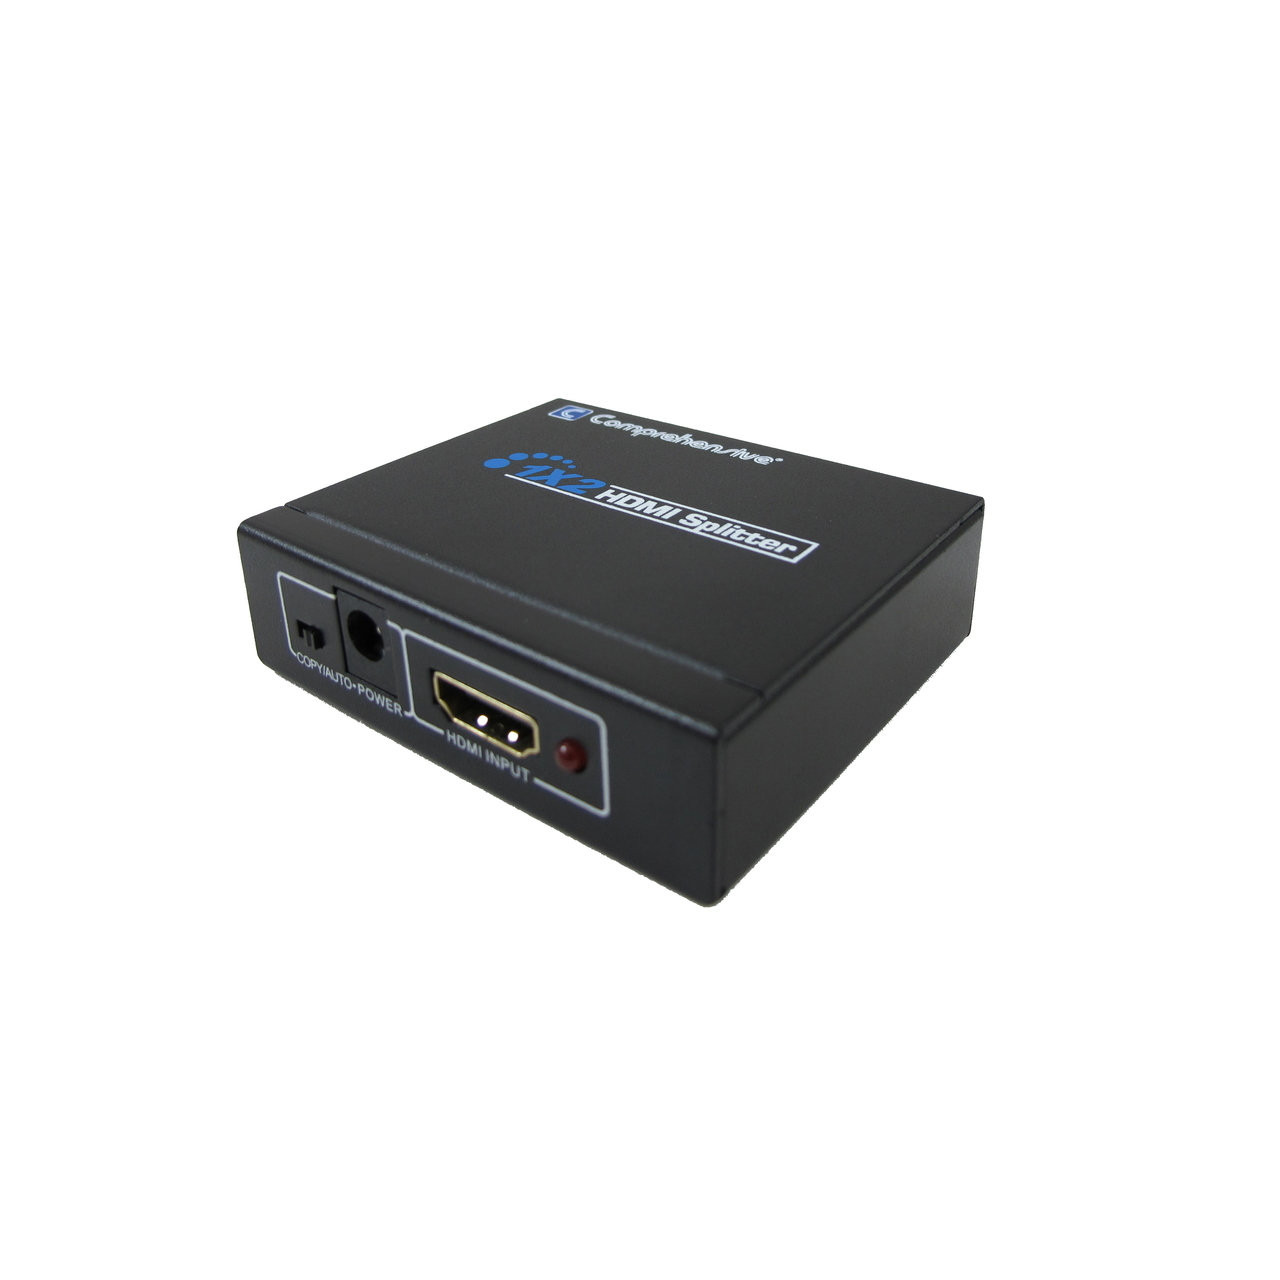 HDMI SPLITTER 1X2 - LSC STORE